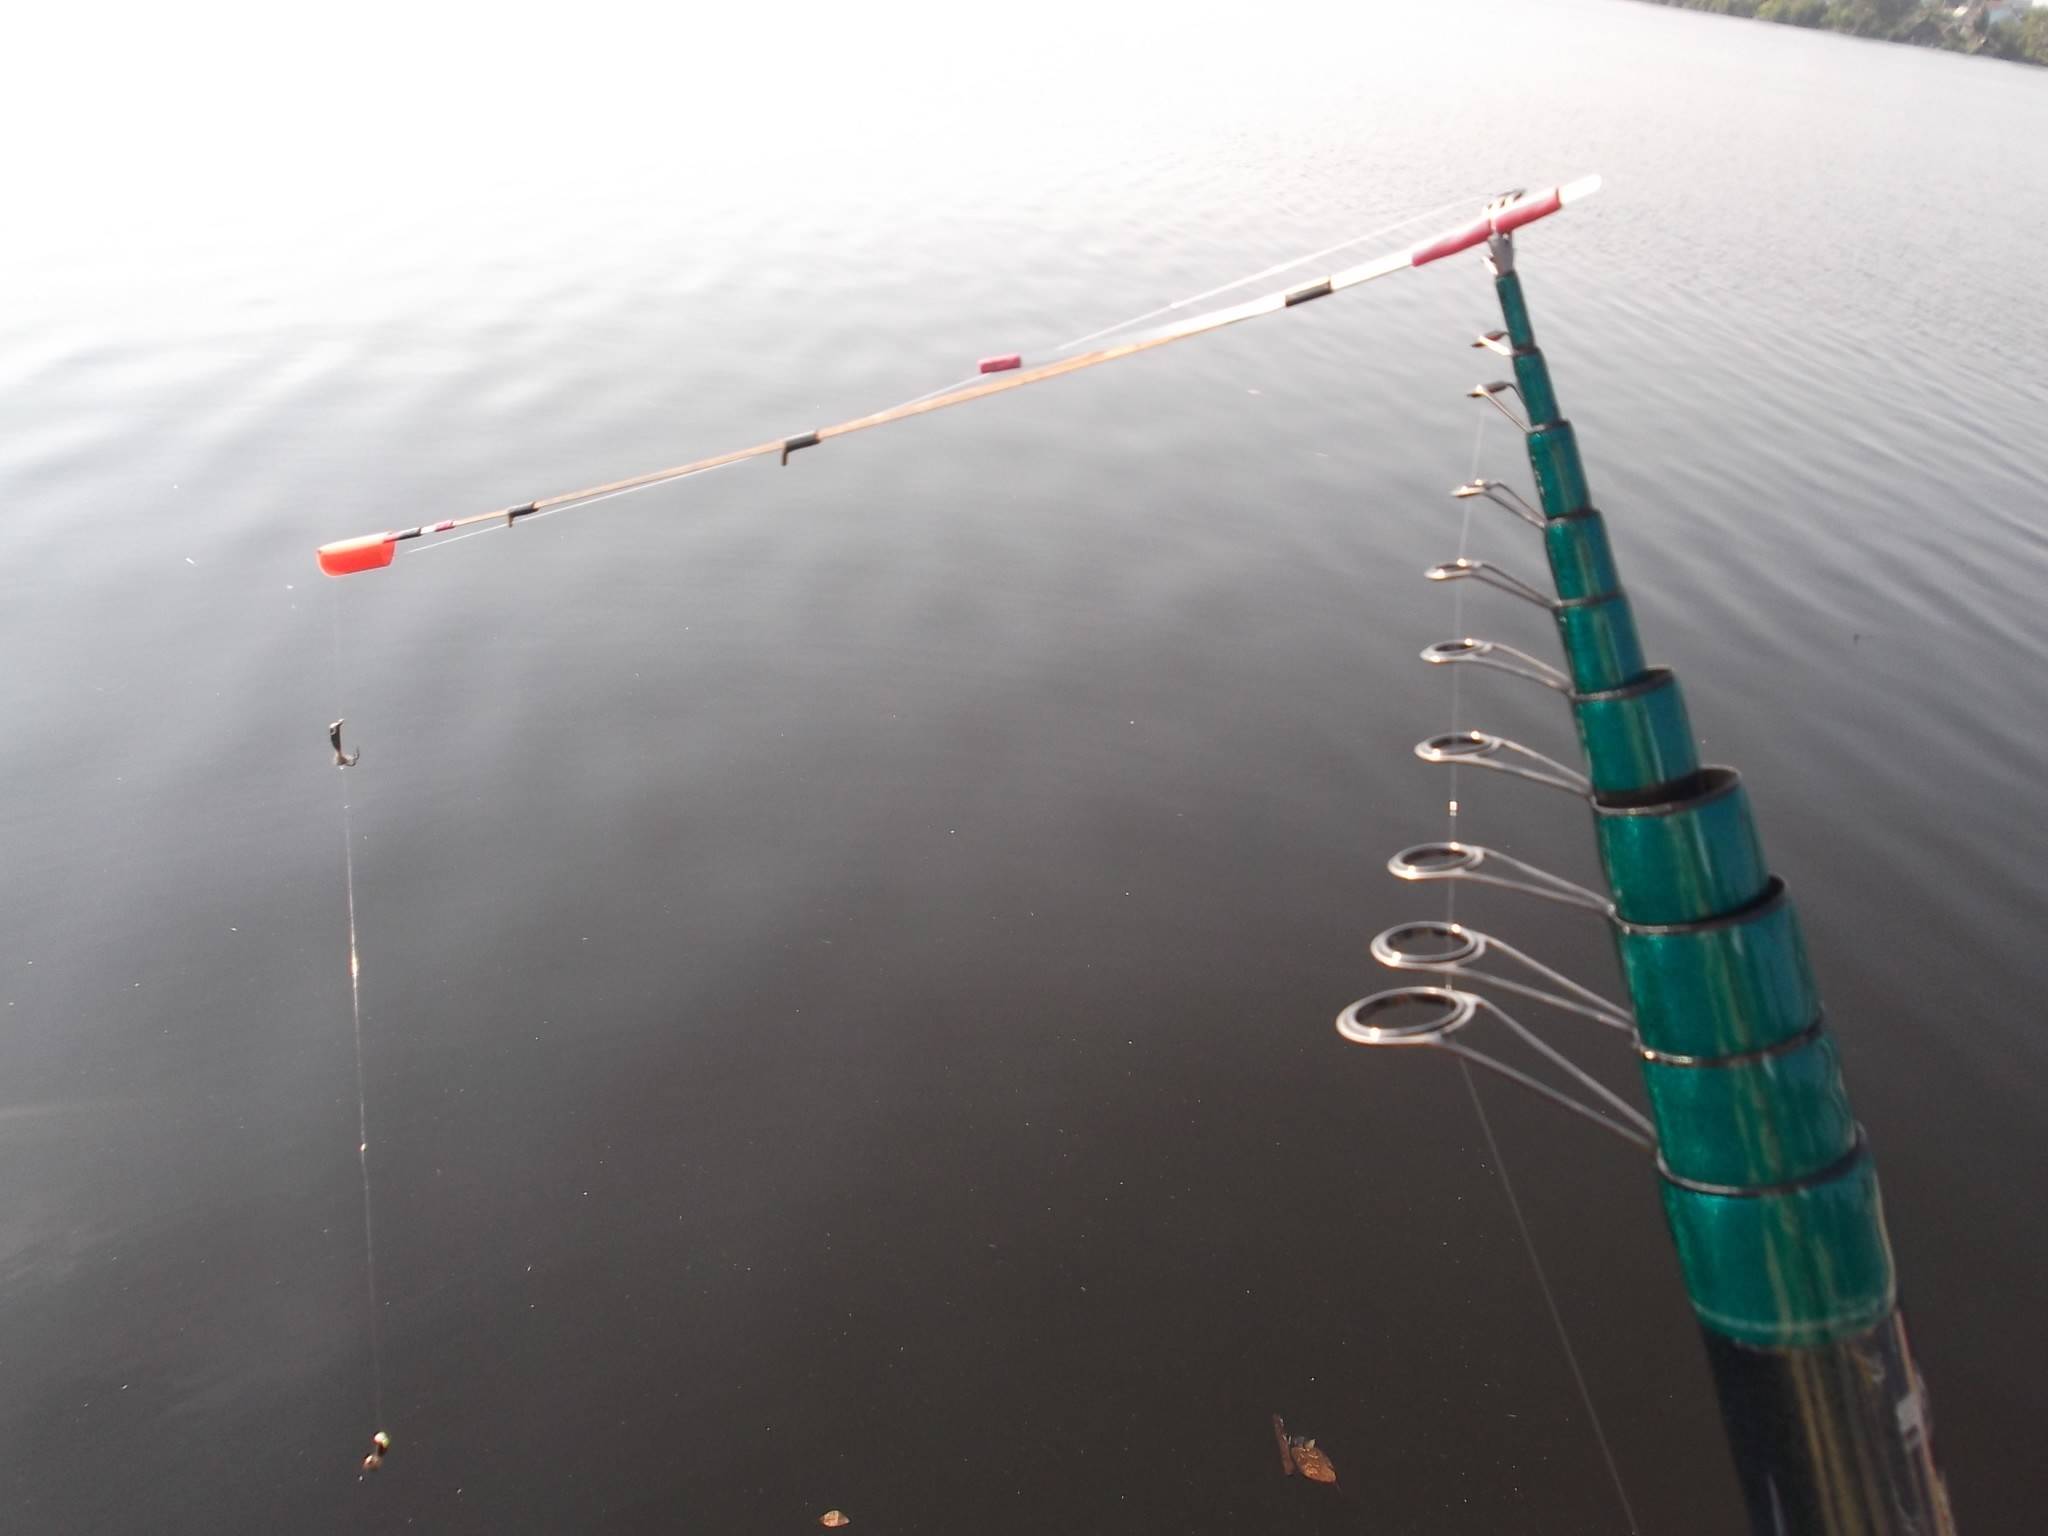 Удочка с кивком для зимней ловли и метод подготовки снасти - суперулов - интернет-портал о рыбалке